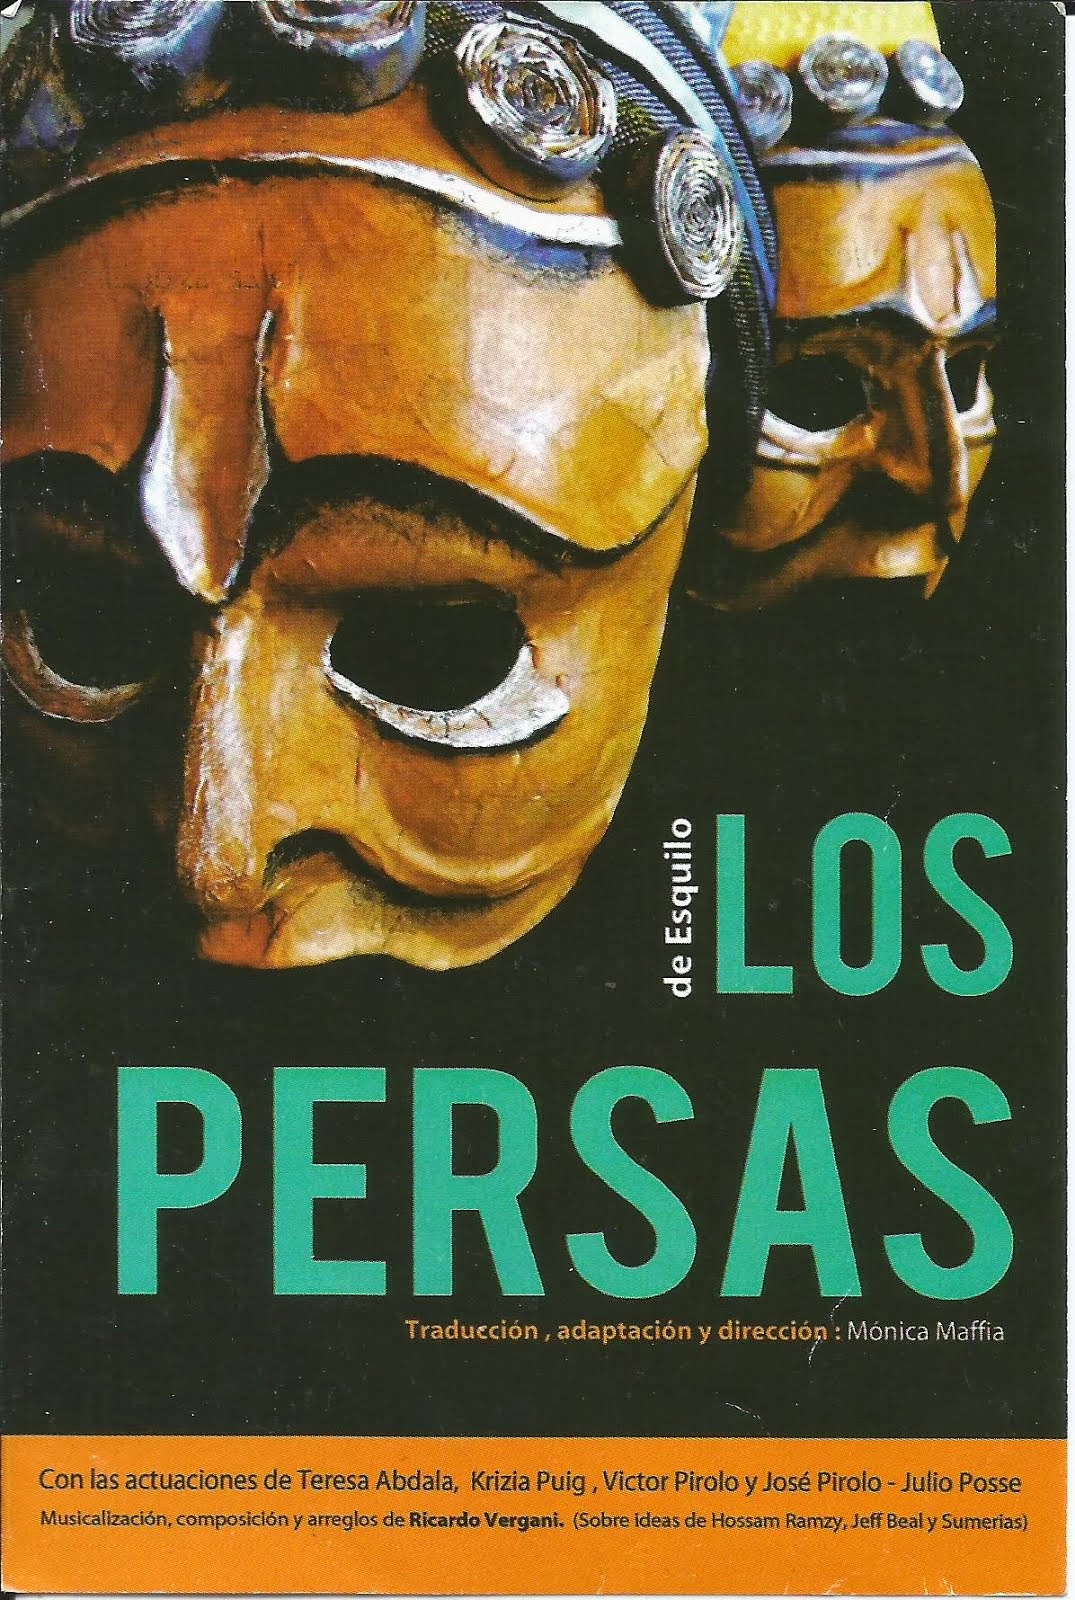 OBRA "LOS PERSAS" de Esquilo, Teatro EL TINGLADO, BUENOS AIRES